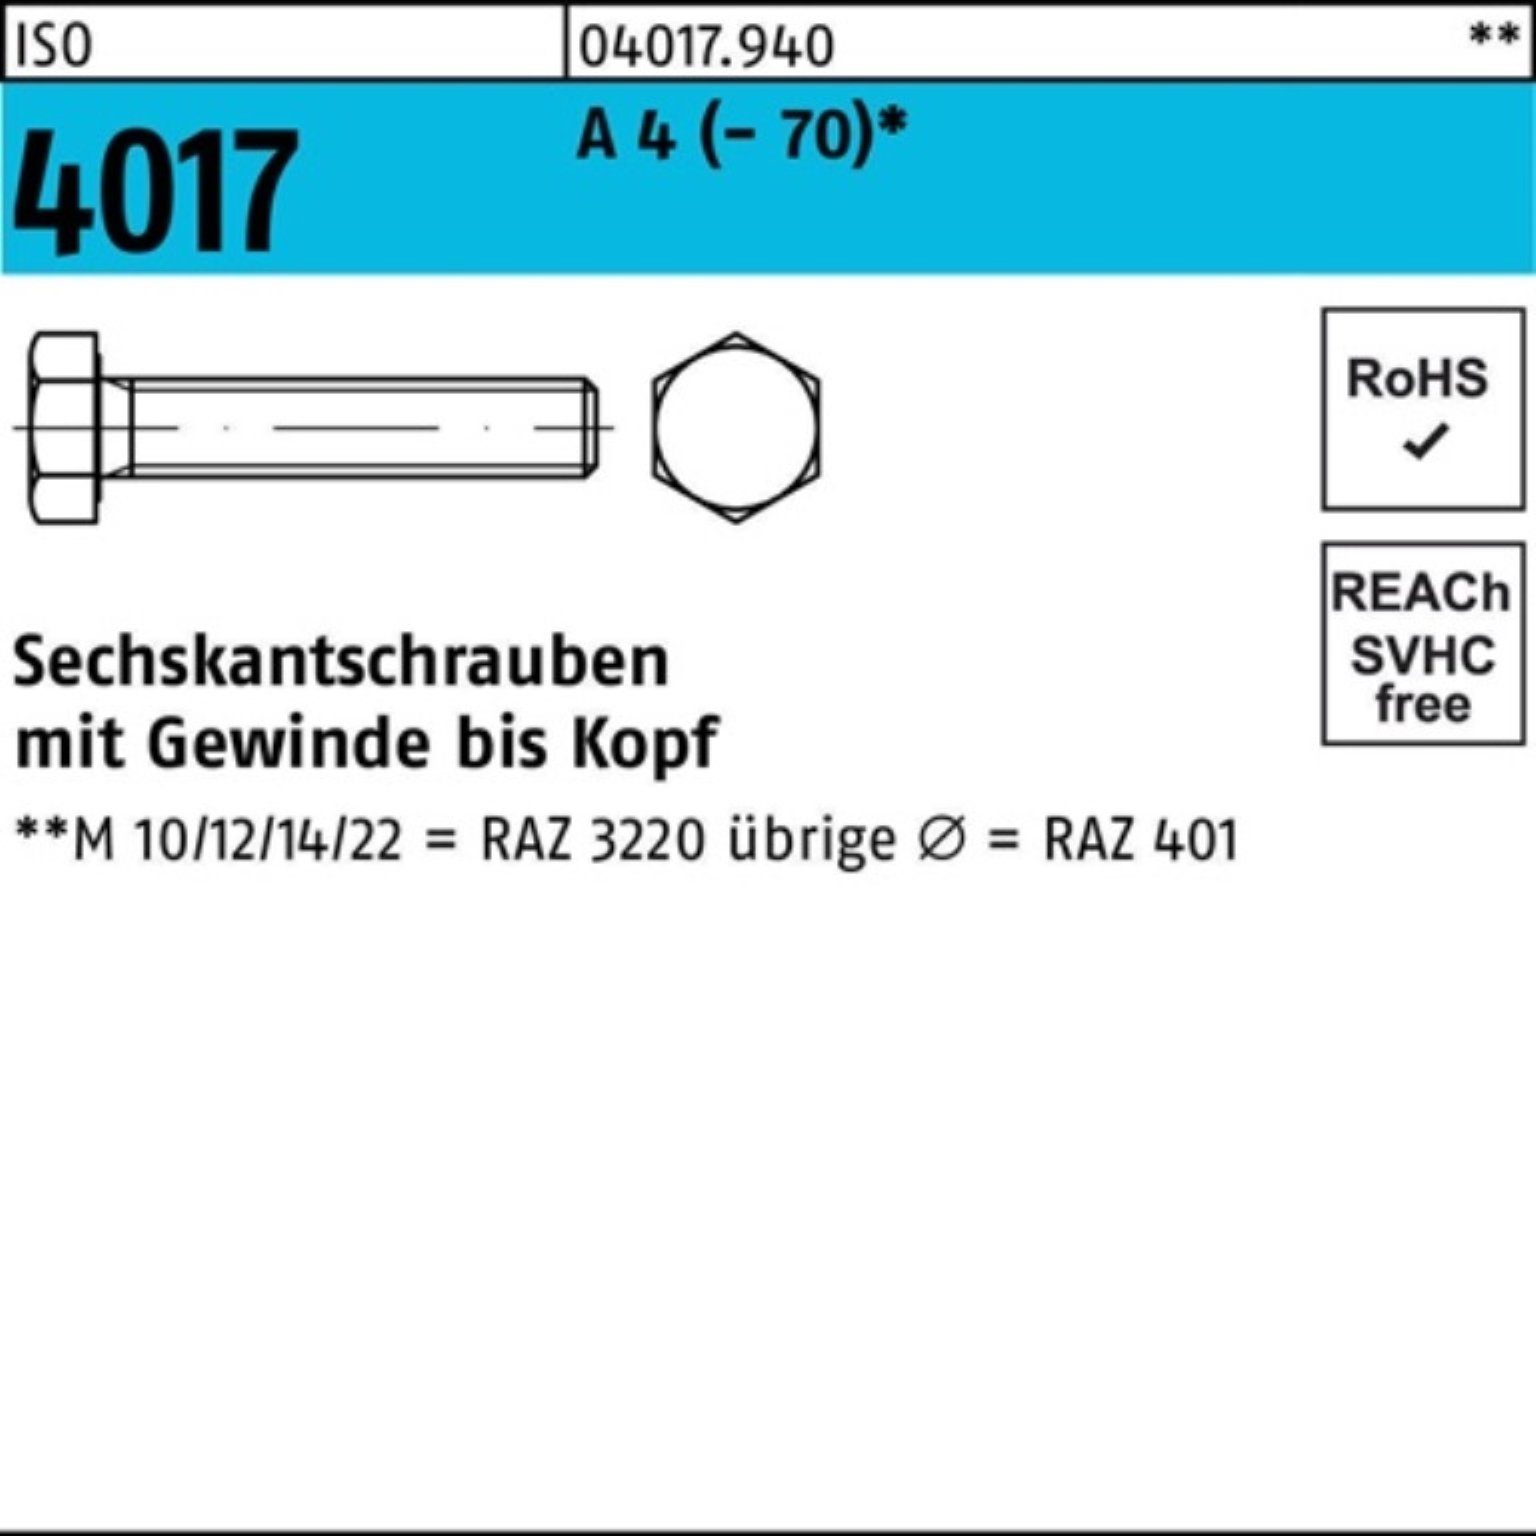 100er A I Pack Stück (70) Bufab Sechskantschraube VG 55 Sechskantschraube 4017 M24x ISO 4 1